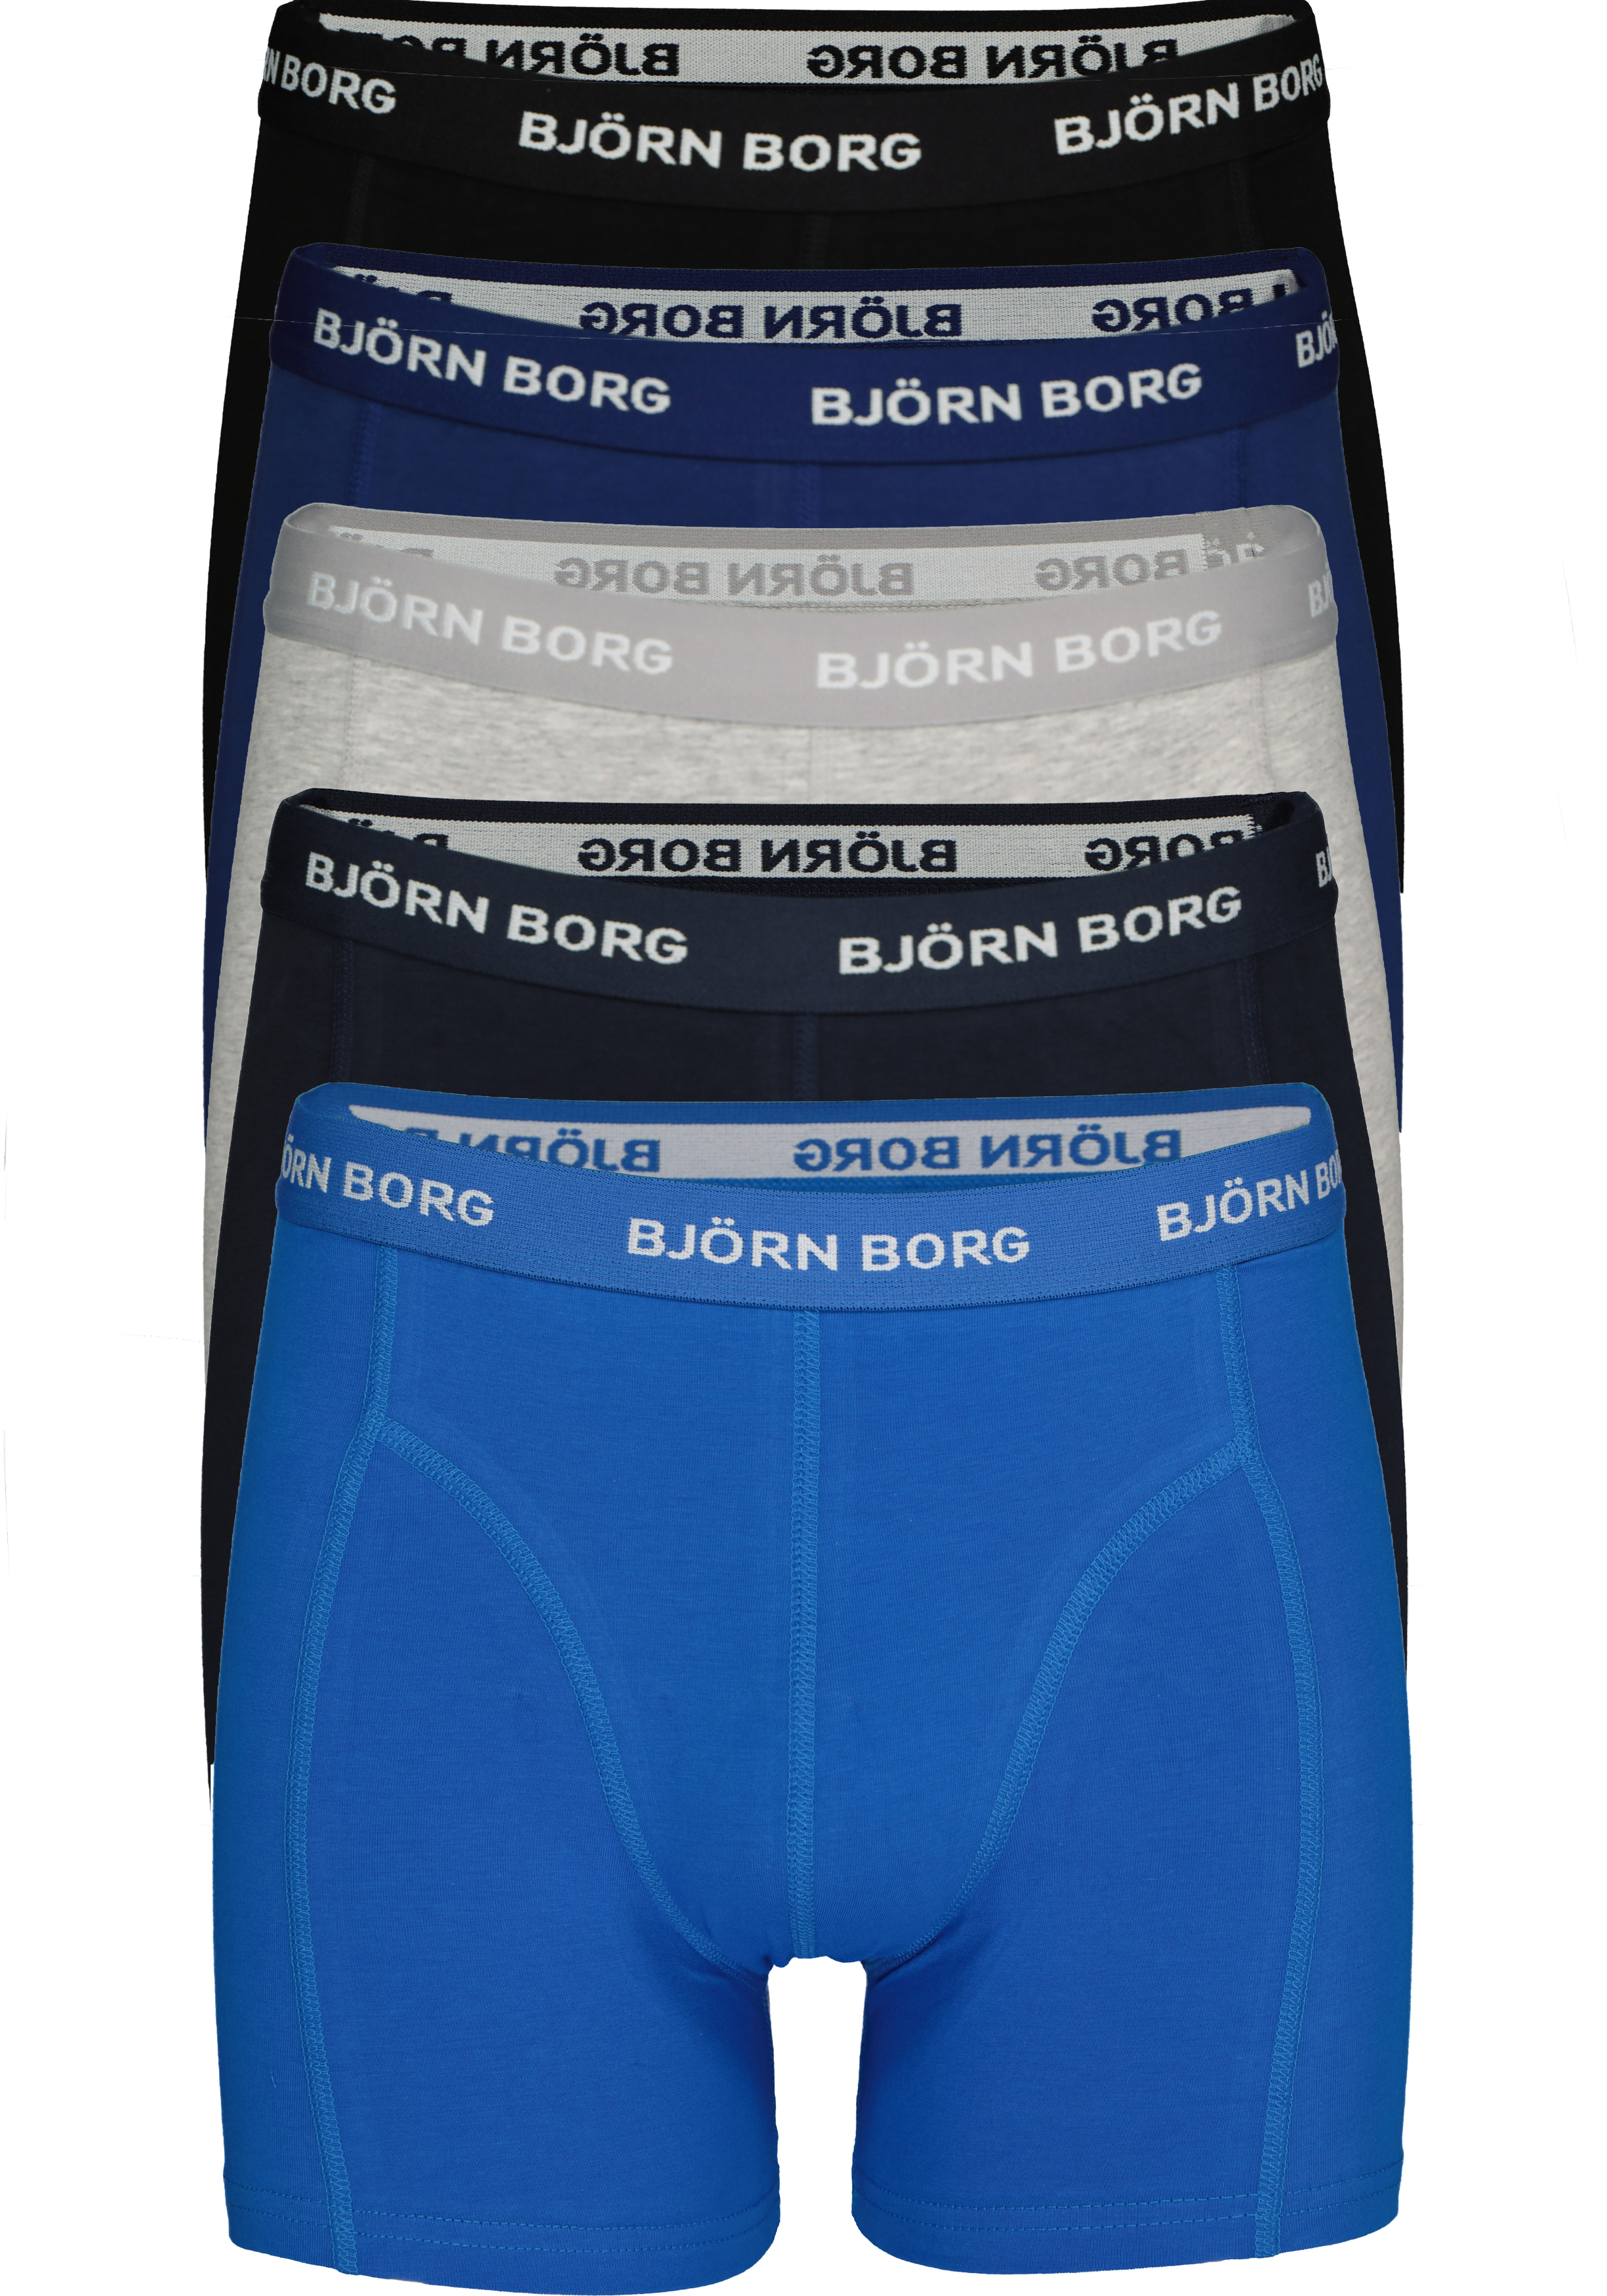 Vloeibaar snor Toevoeging Bjorn Borg boxershorts Essential (5-pack), heren boxers normale lengte,...  - Gratis verzending en retour